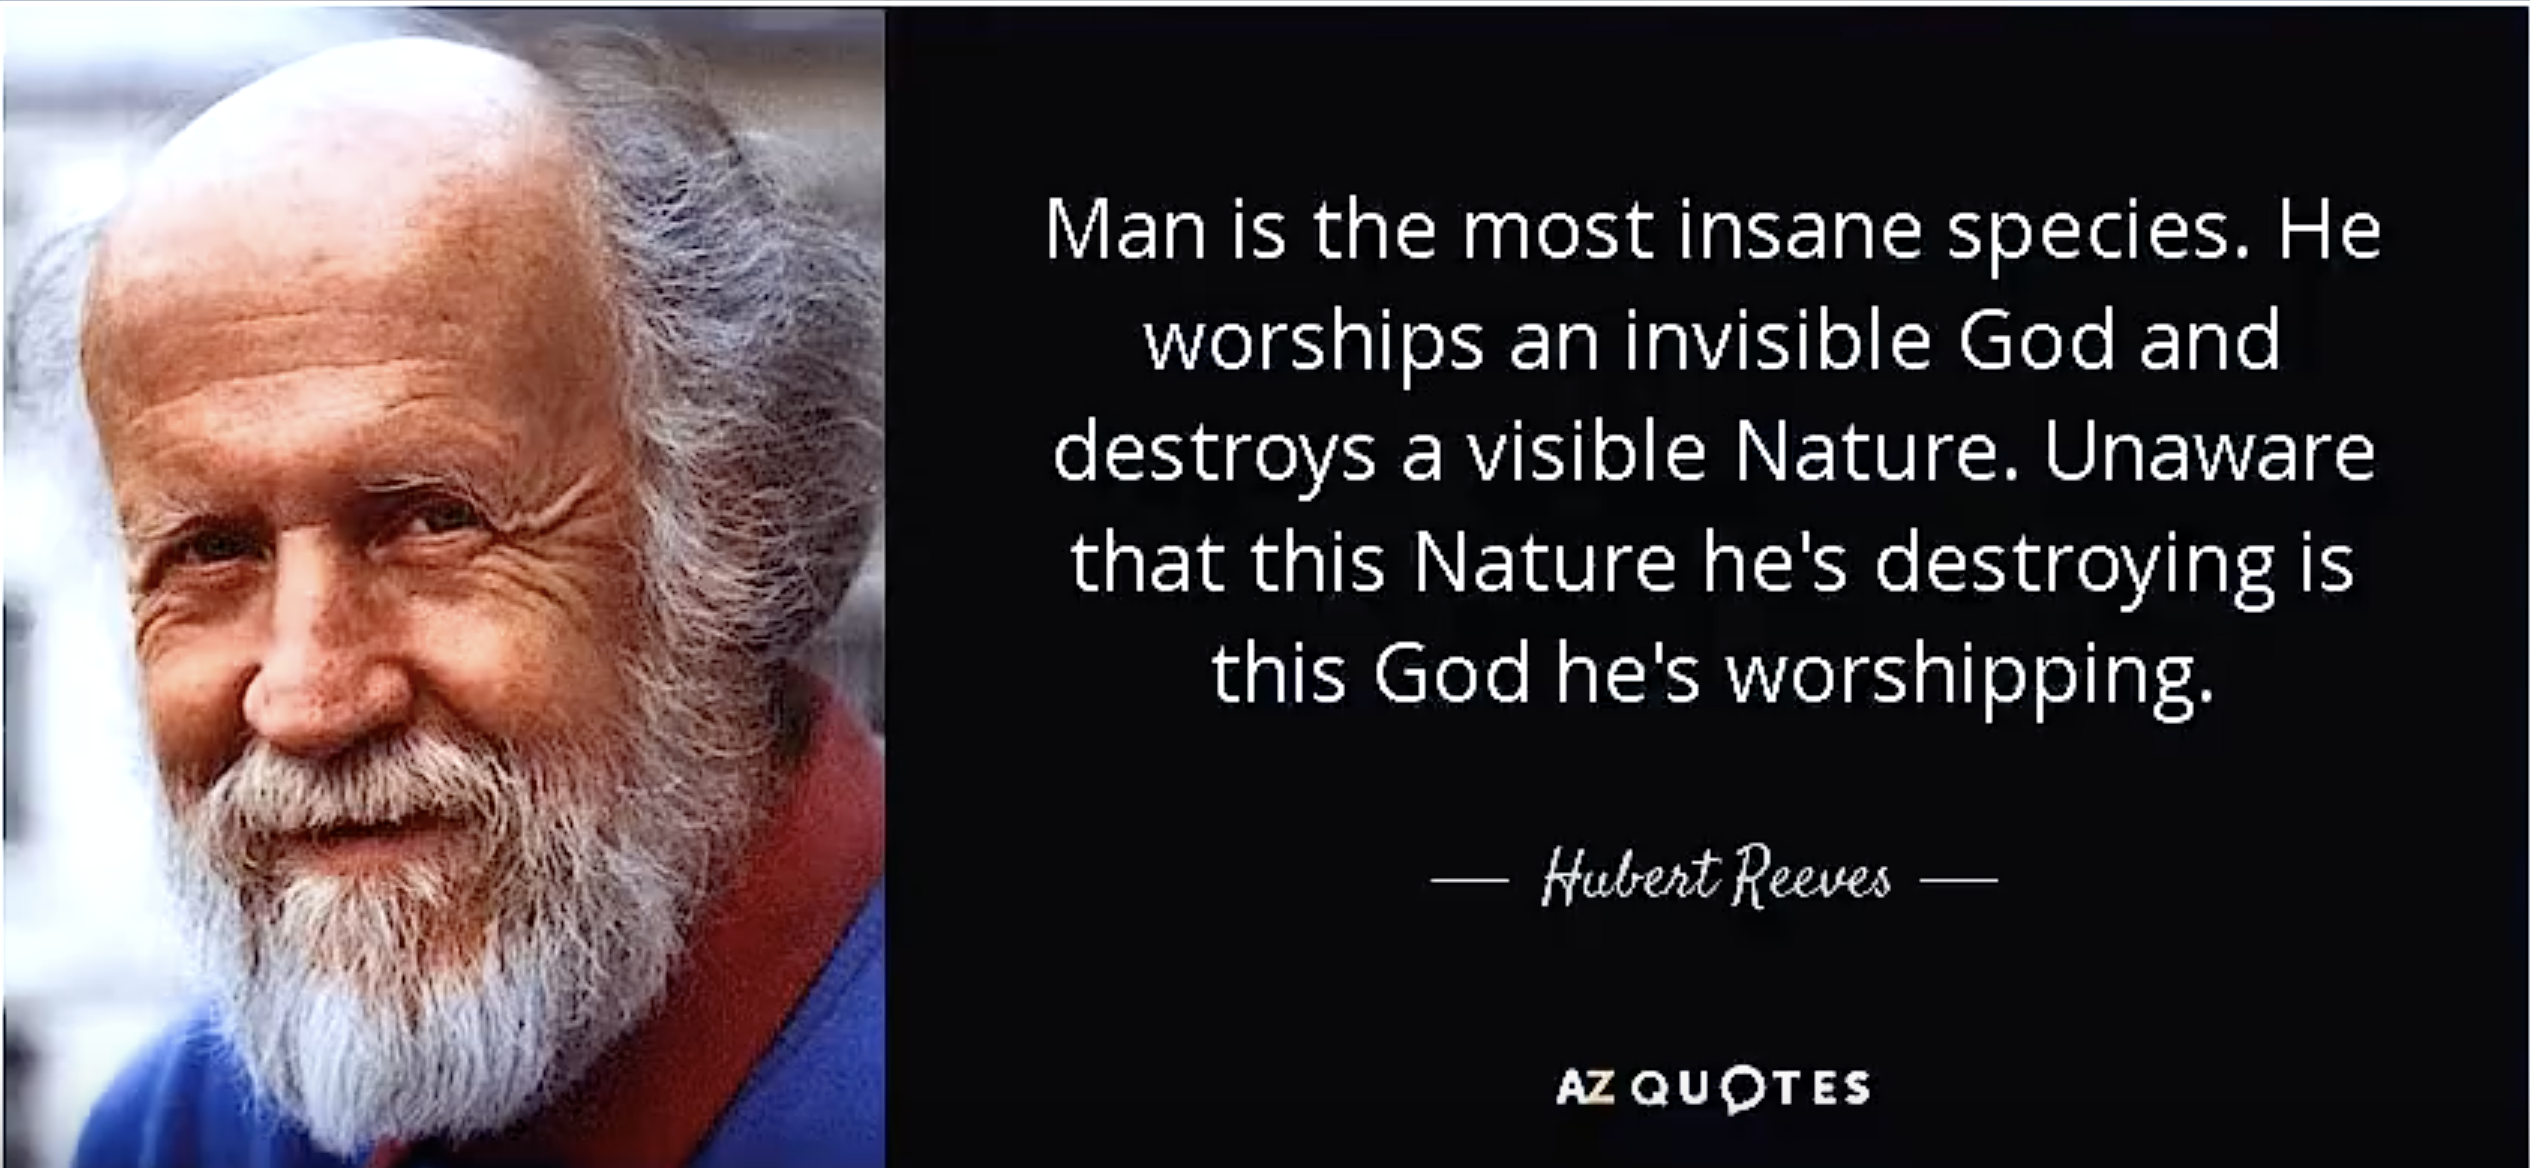 Zitat von Hubert Reeves über die Natur